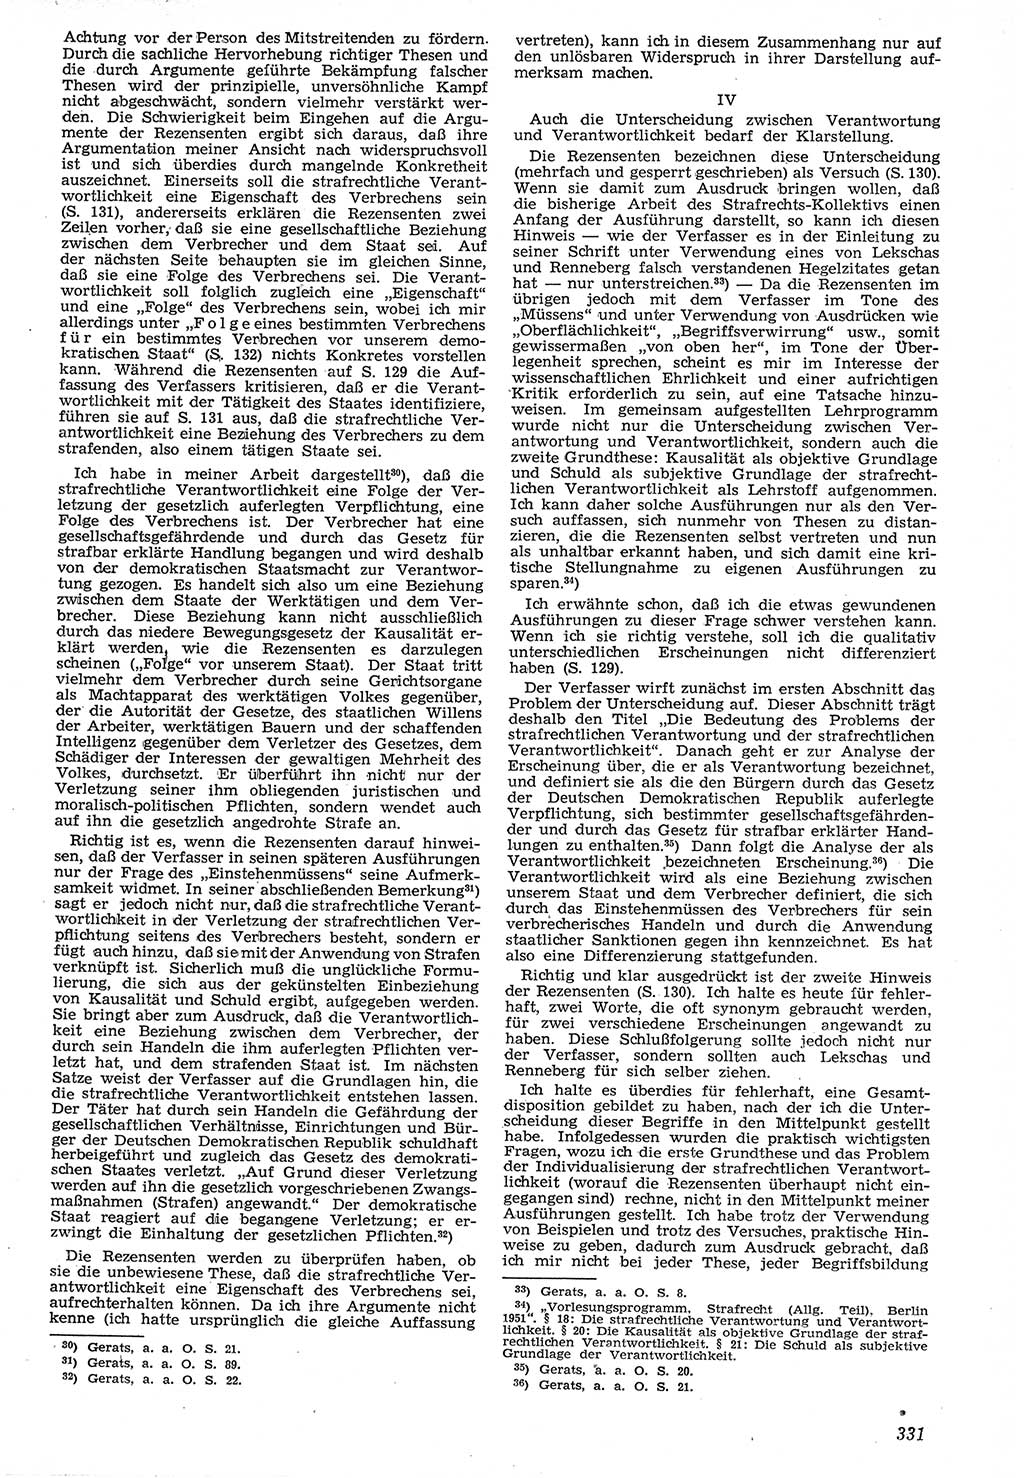 Neue Justiz (NJ), Zeitschrift für Recht und Rechtswissenschaft [Deutsche Demokratische Republik (DDR)], 7. Jahrgang 1953, Seite 331 (NJ DDR 1953, S. 331)